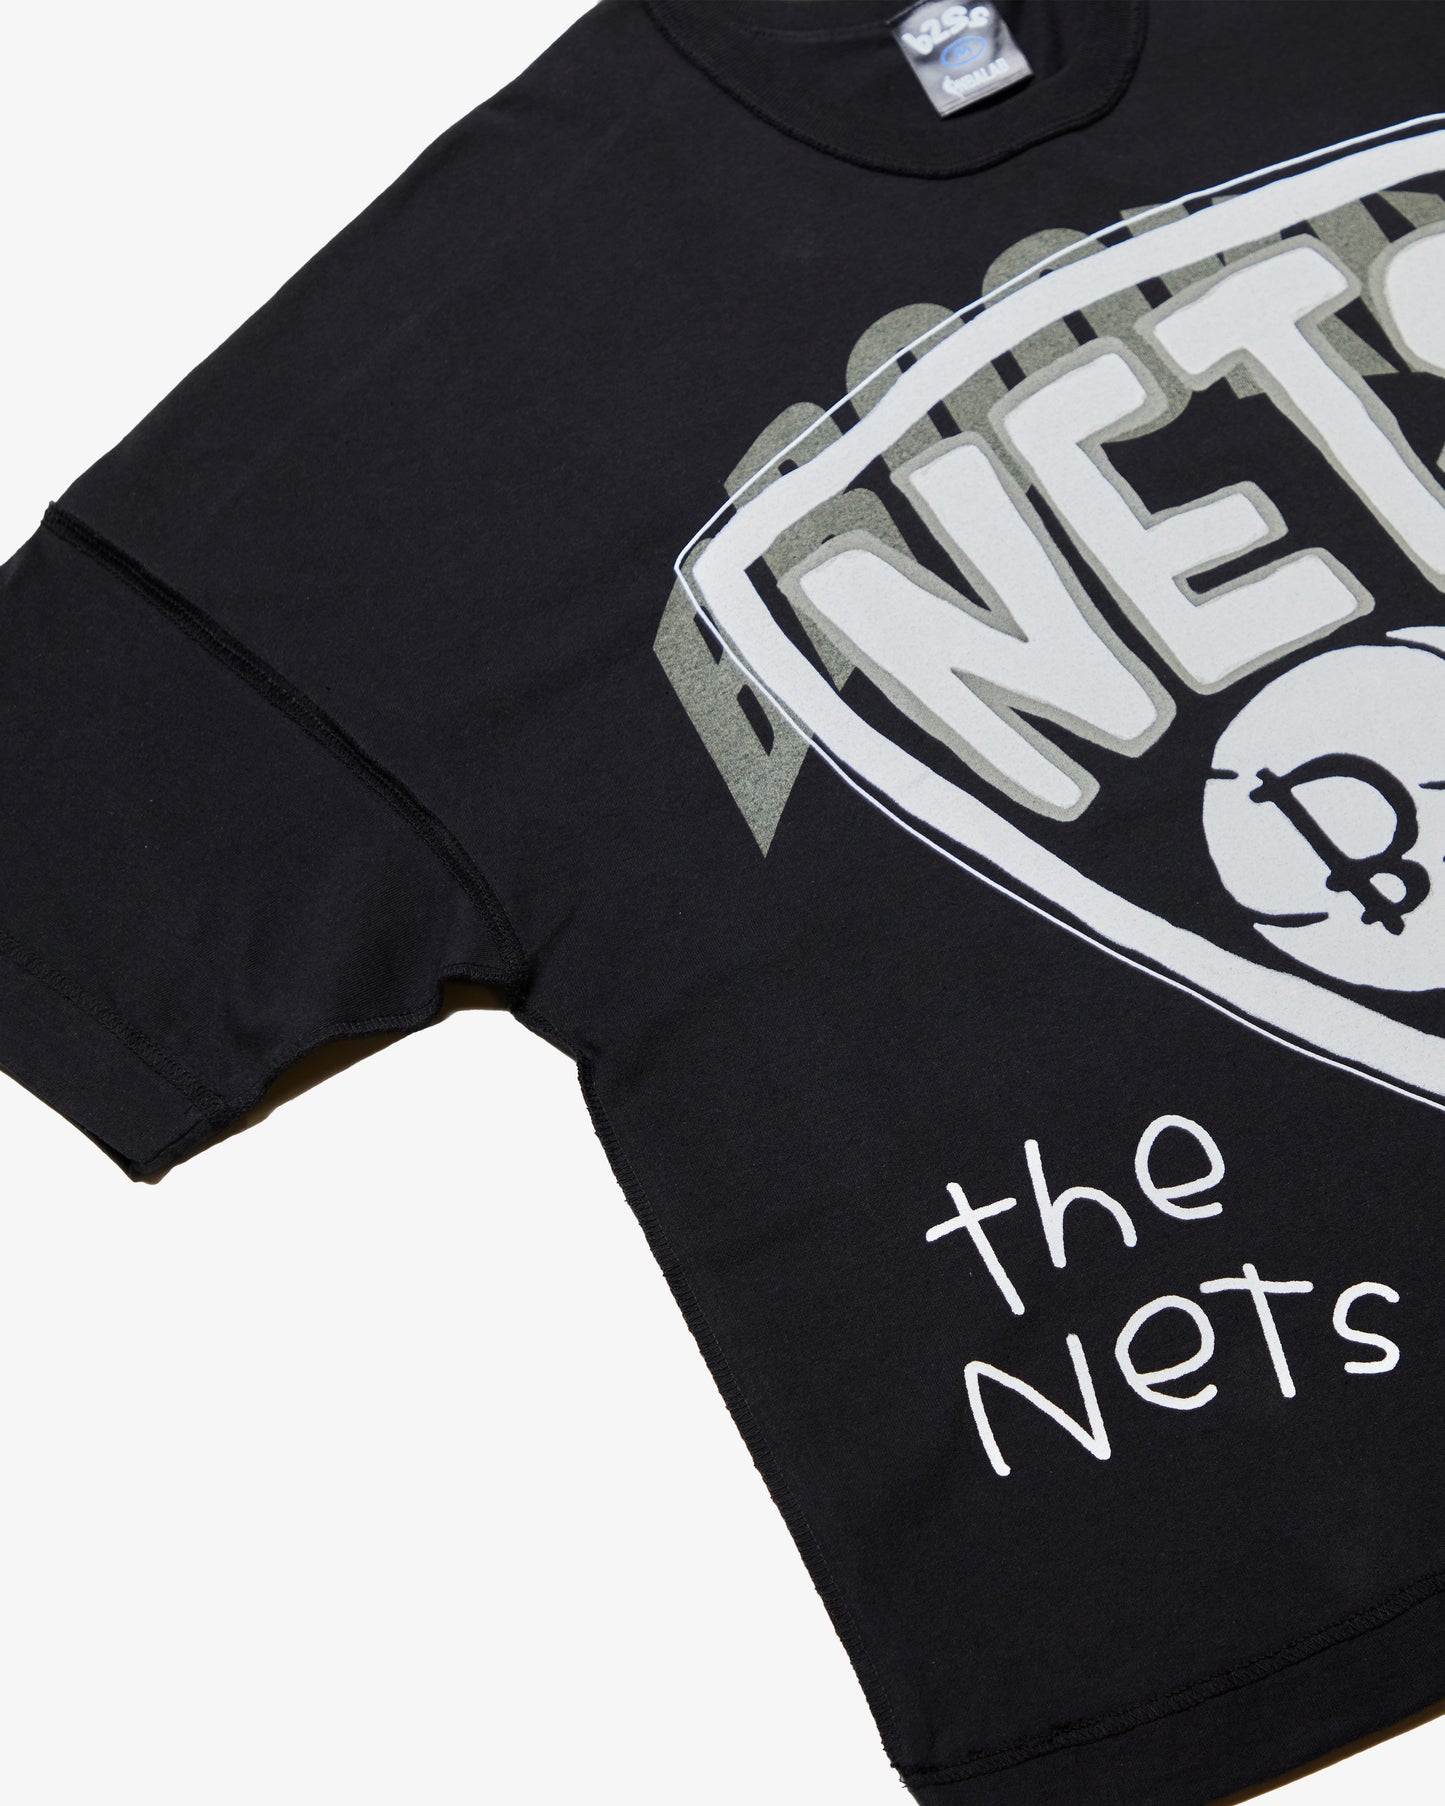 nets t shirt